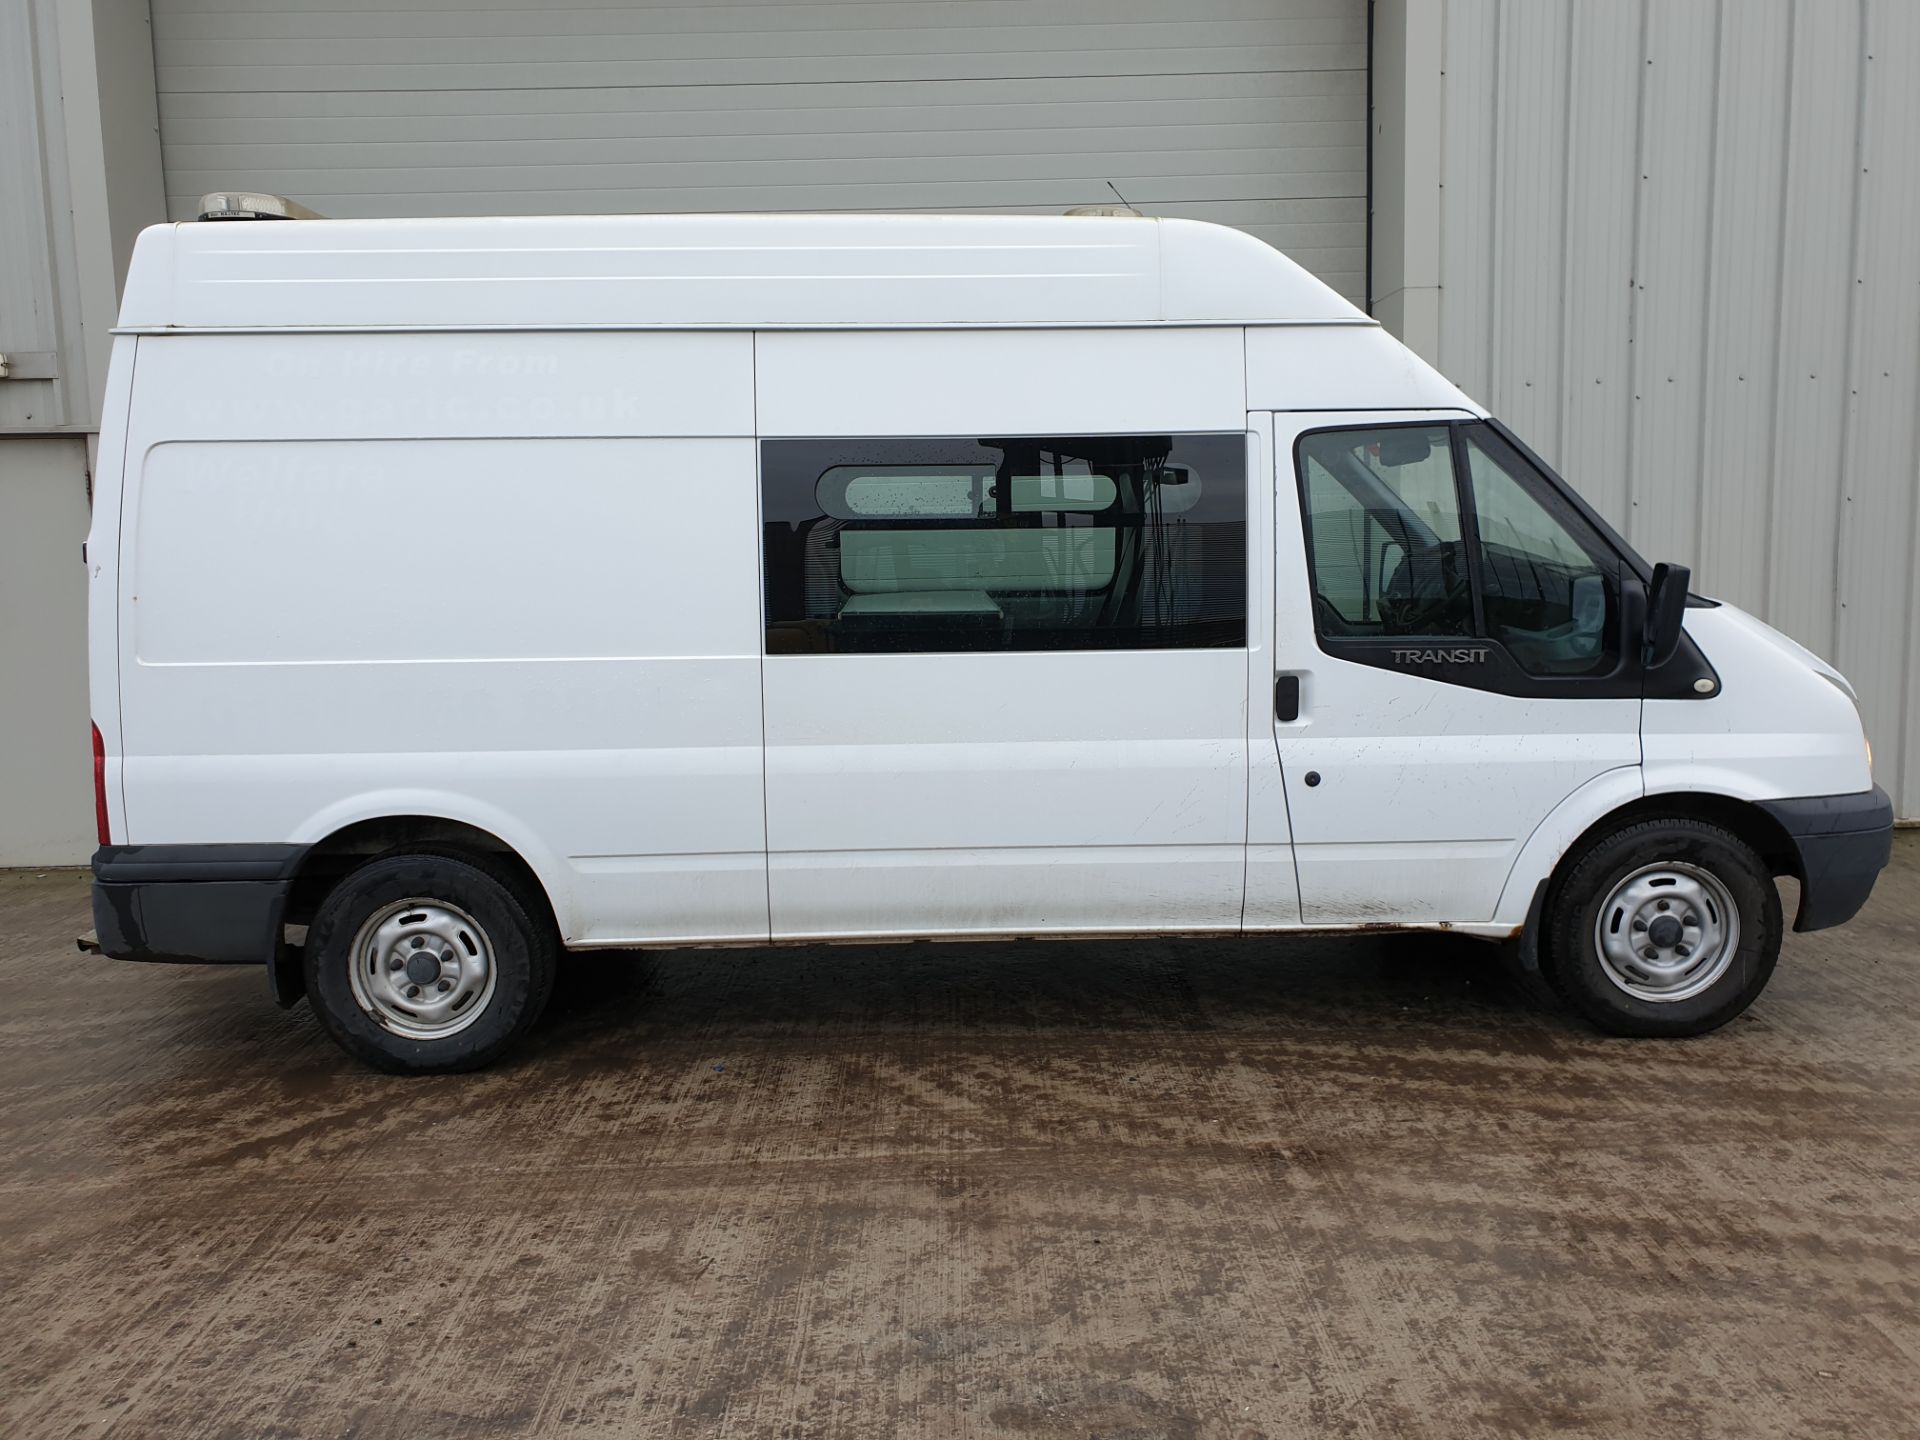 2012 / 12 Ford Transit 2.4 Diesel Welfare Van - Image 2 of 19